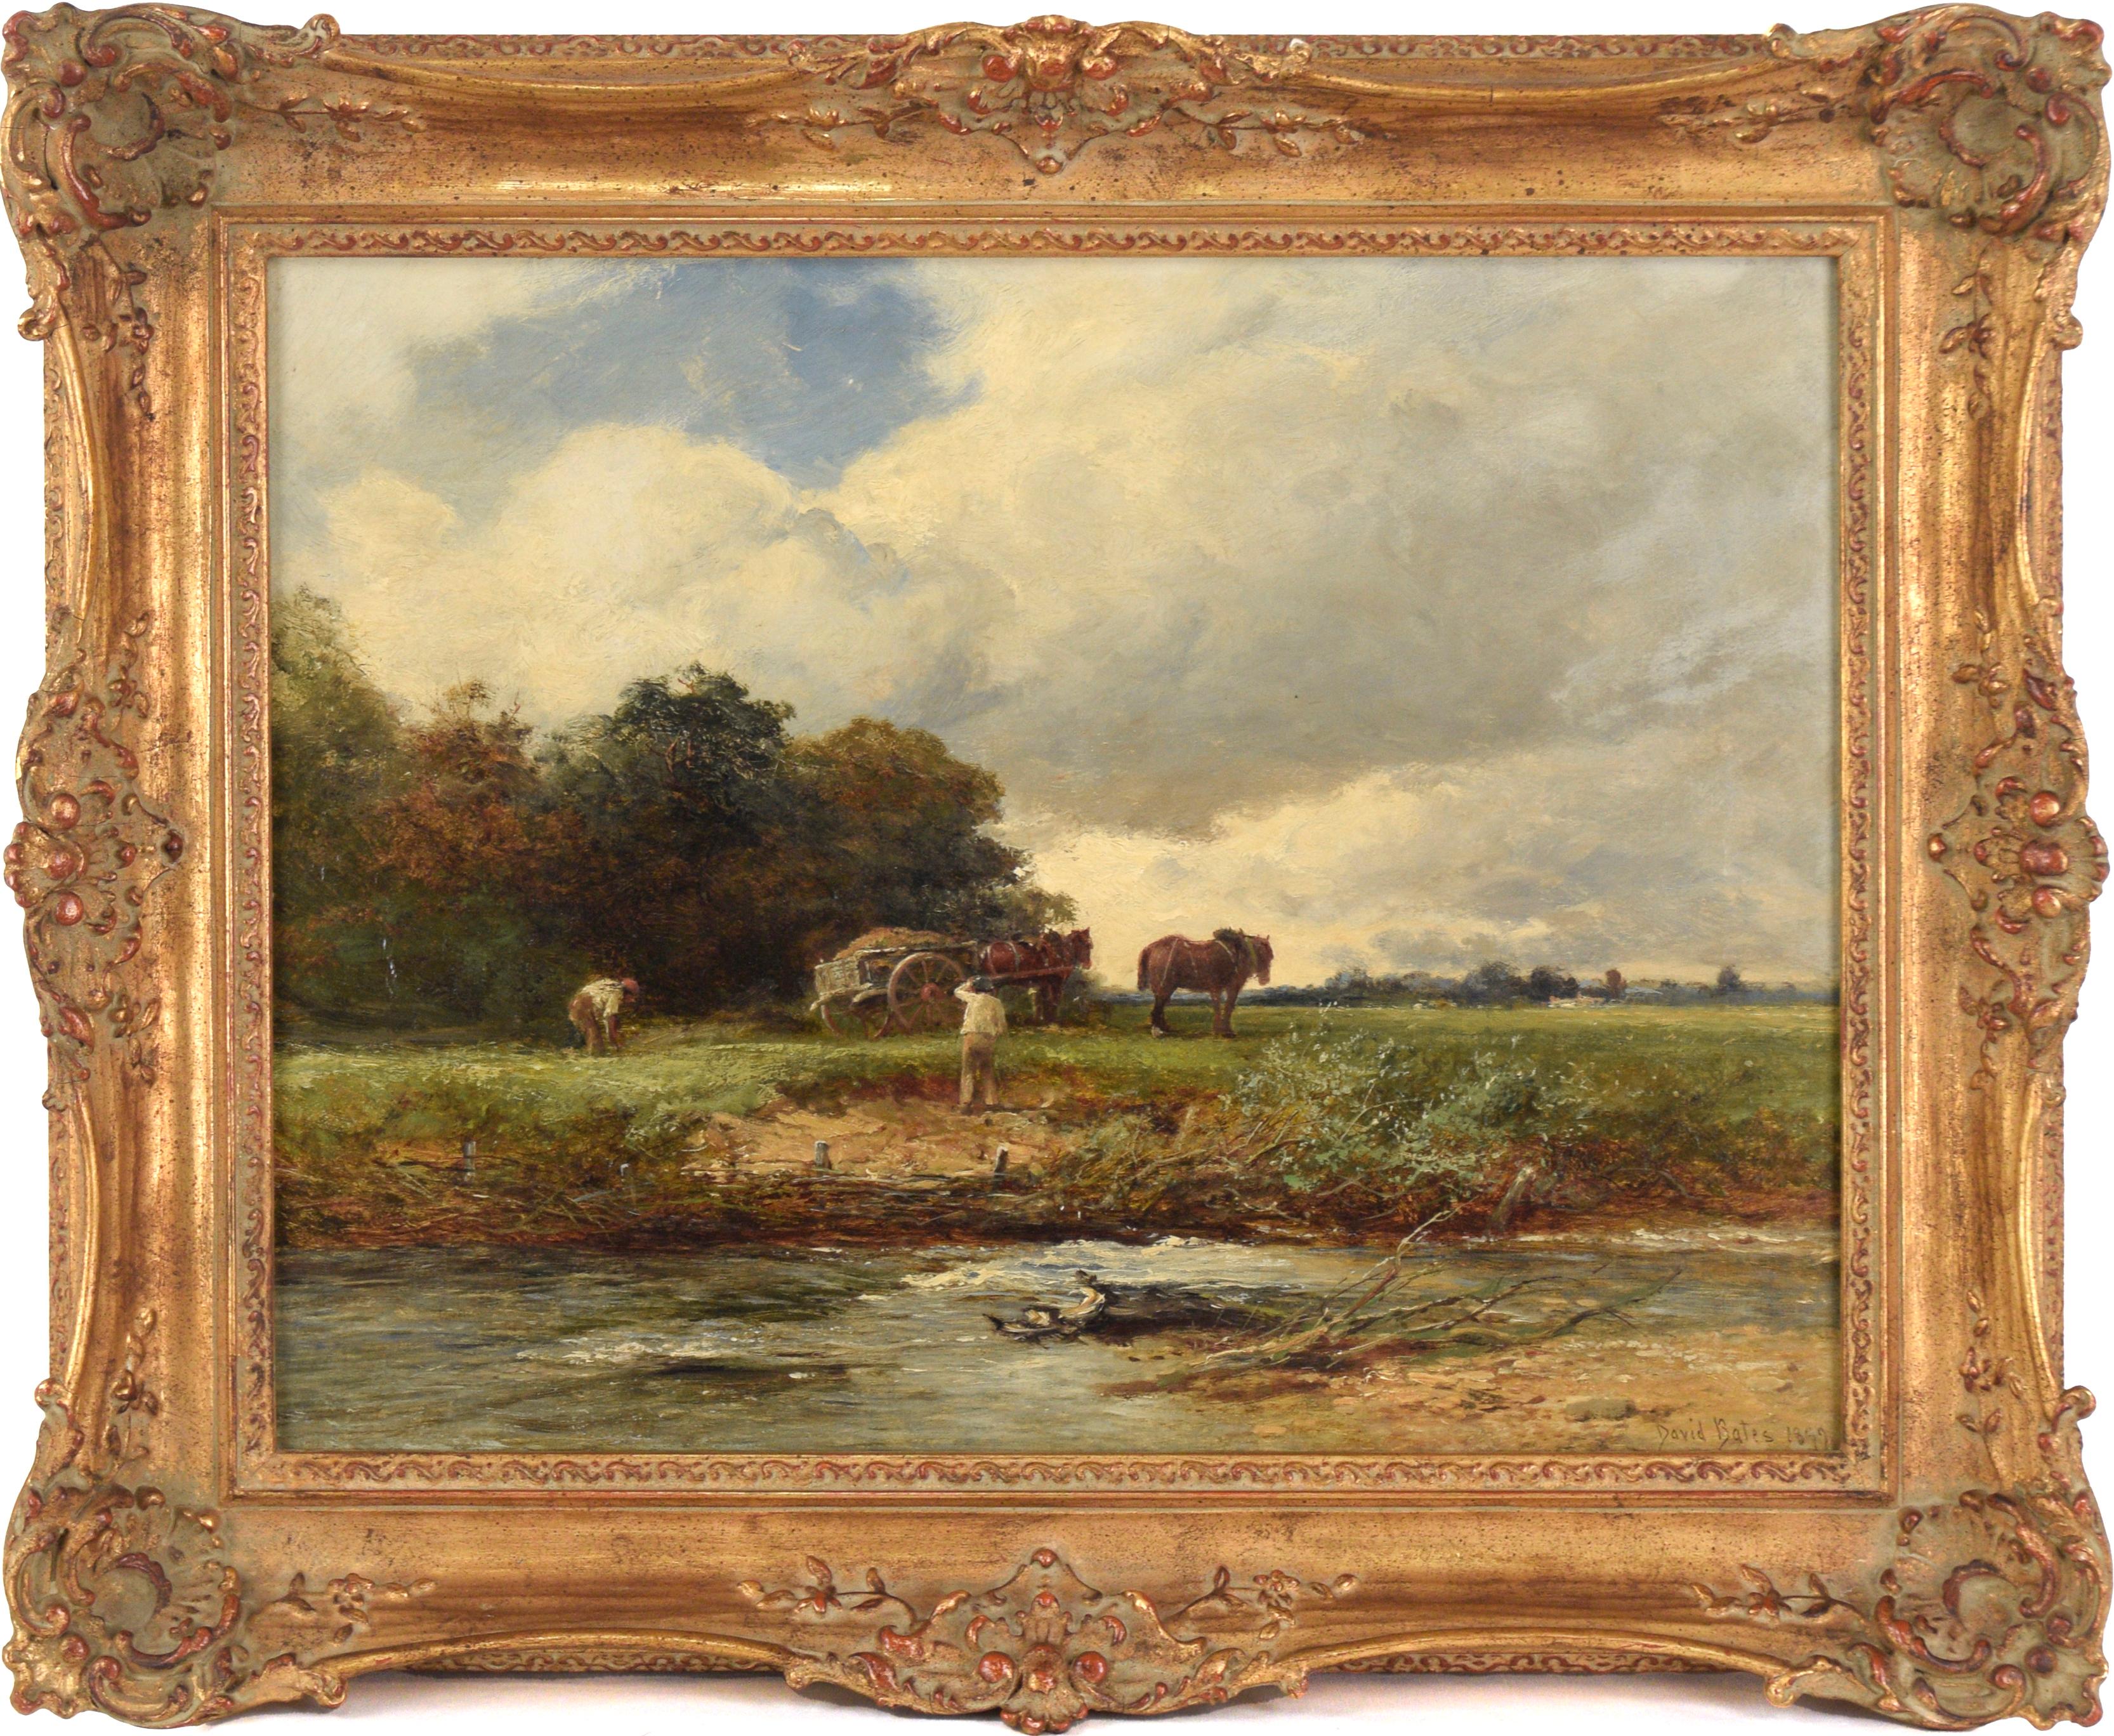 Landscape Painting David Bates b.1840 - "Mending the Bank" 1899 - Huile pastorale anglaise sur lin de David Bates 